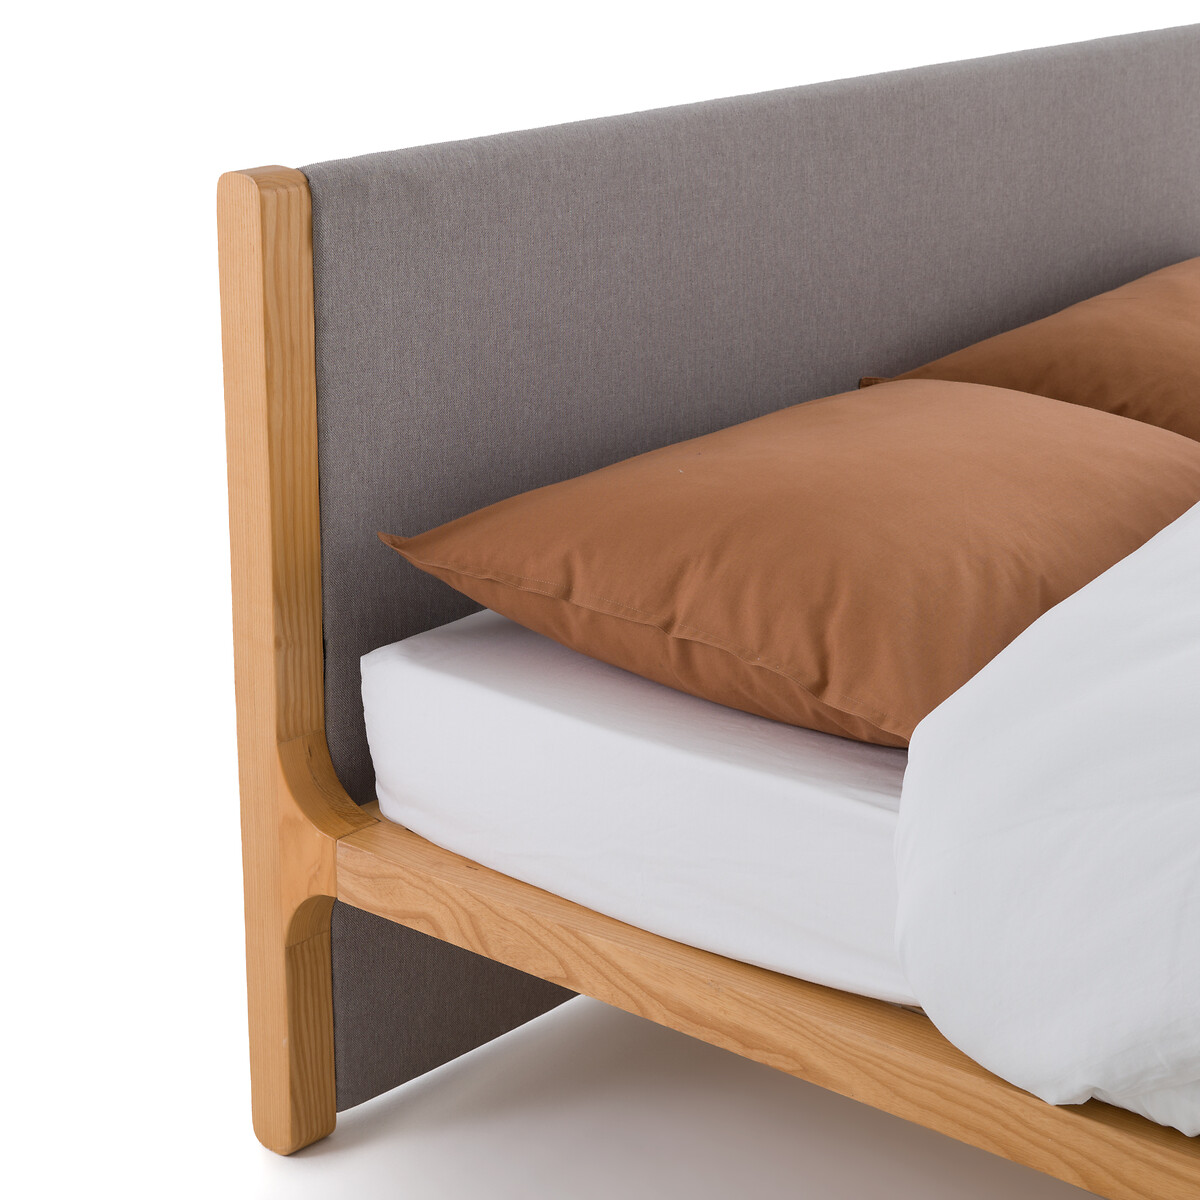 Кровать La Redoute С реечным дном ELORI 140 x 190 см серый, размер 140 x 190 см - фото 4